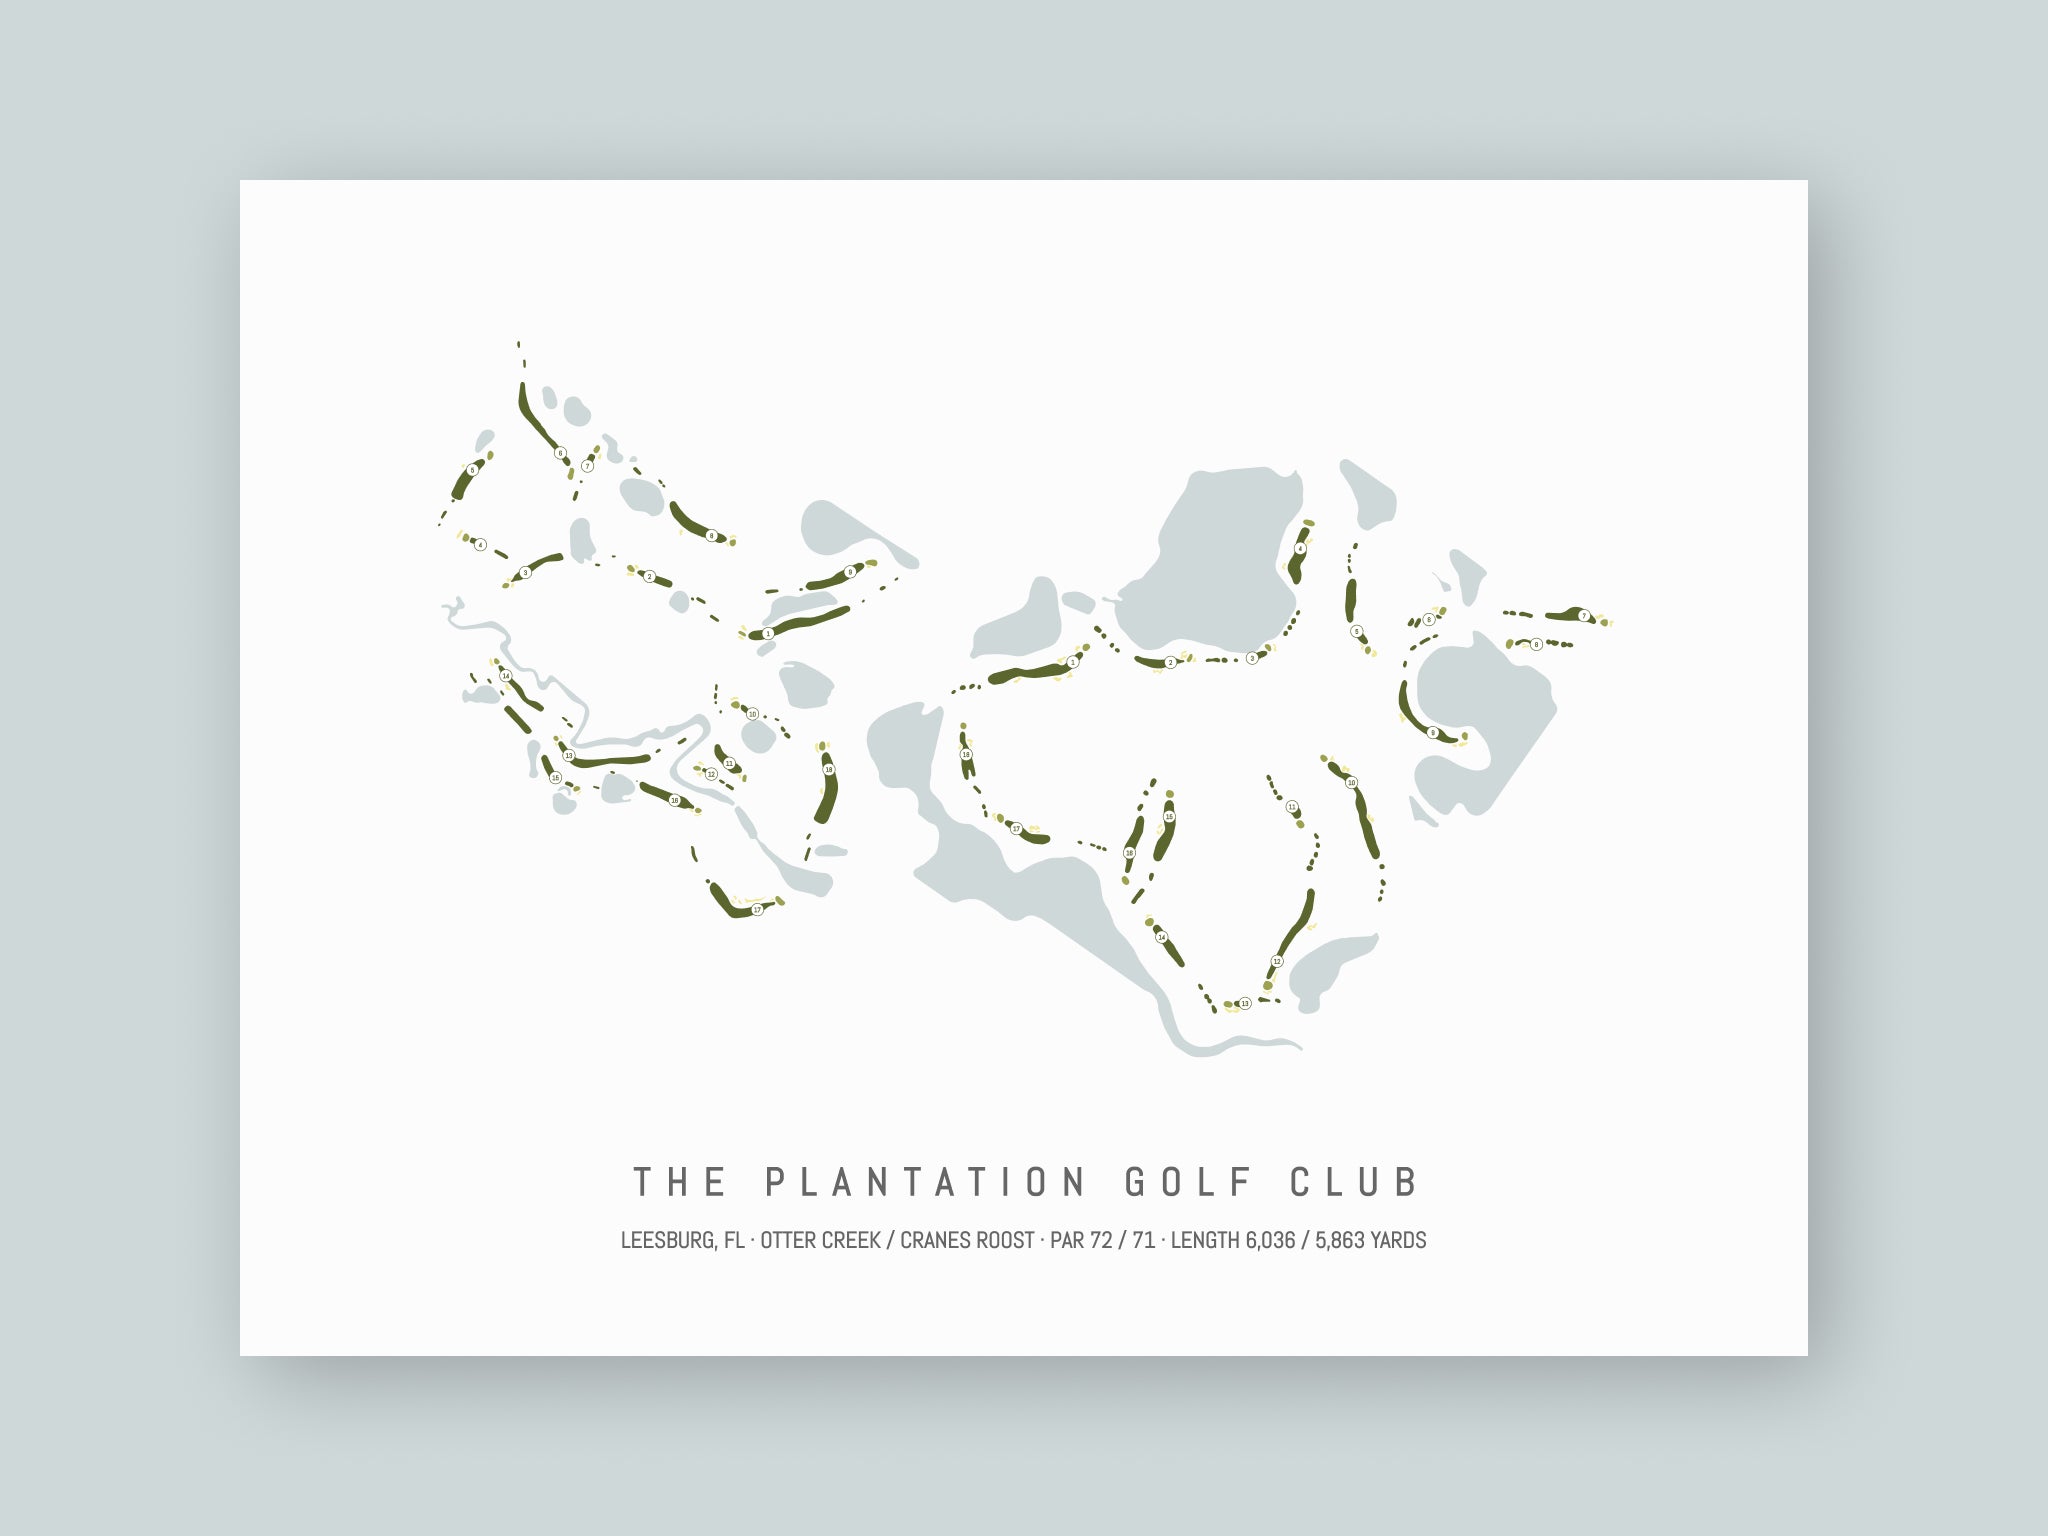 The Plantation Golf Club